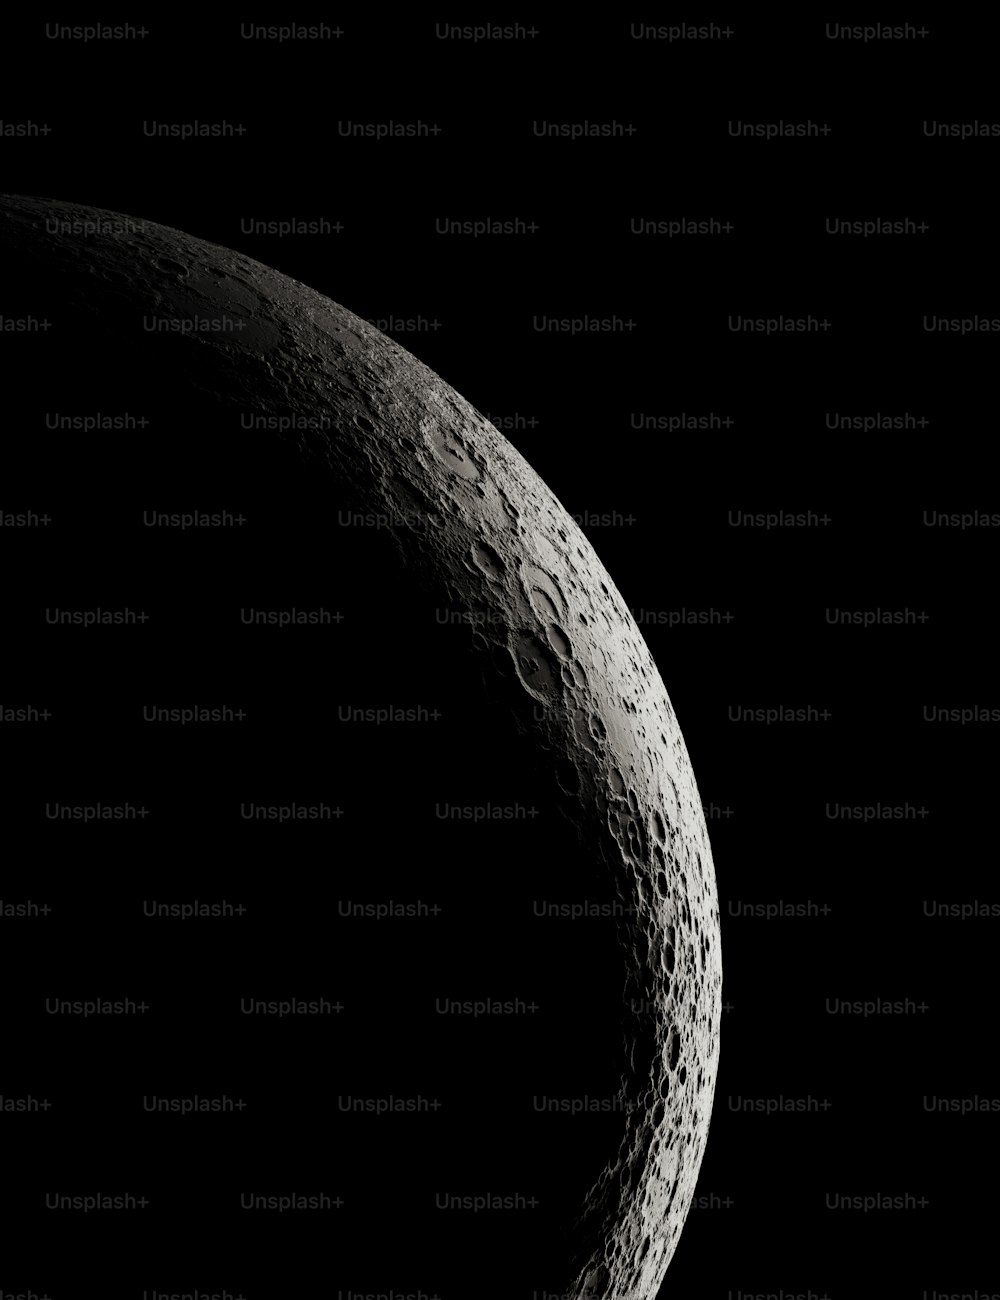 nasa moon images